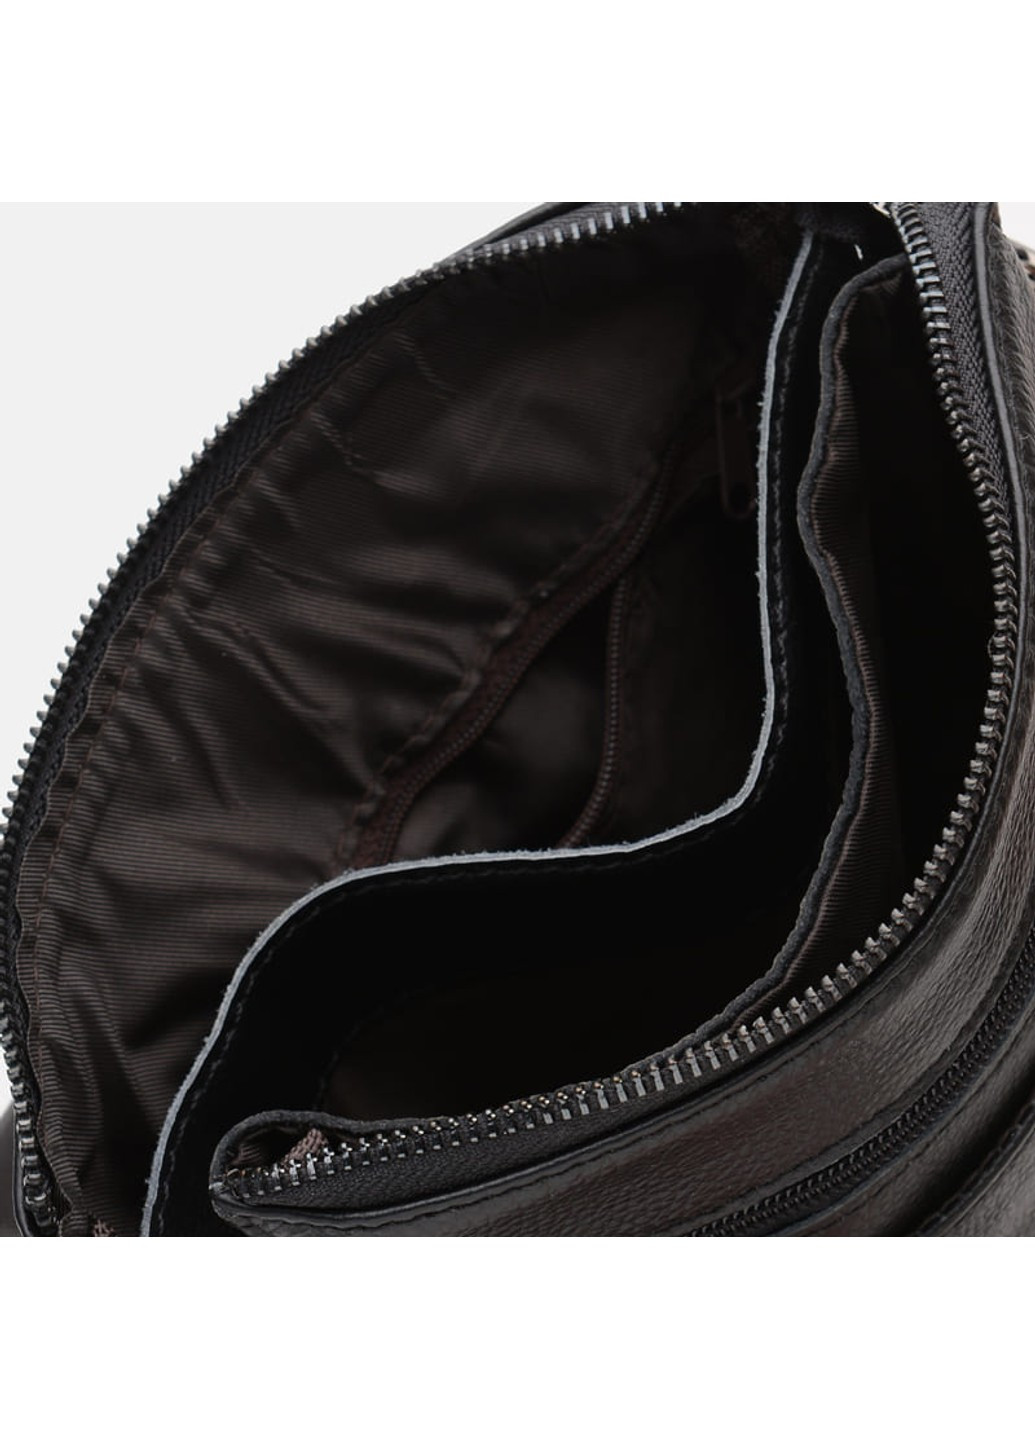 Чоловіча шкіряна сумка K12056-black Borsa Leather (266144012)